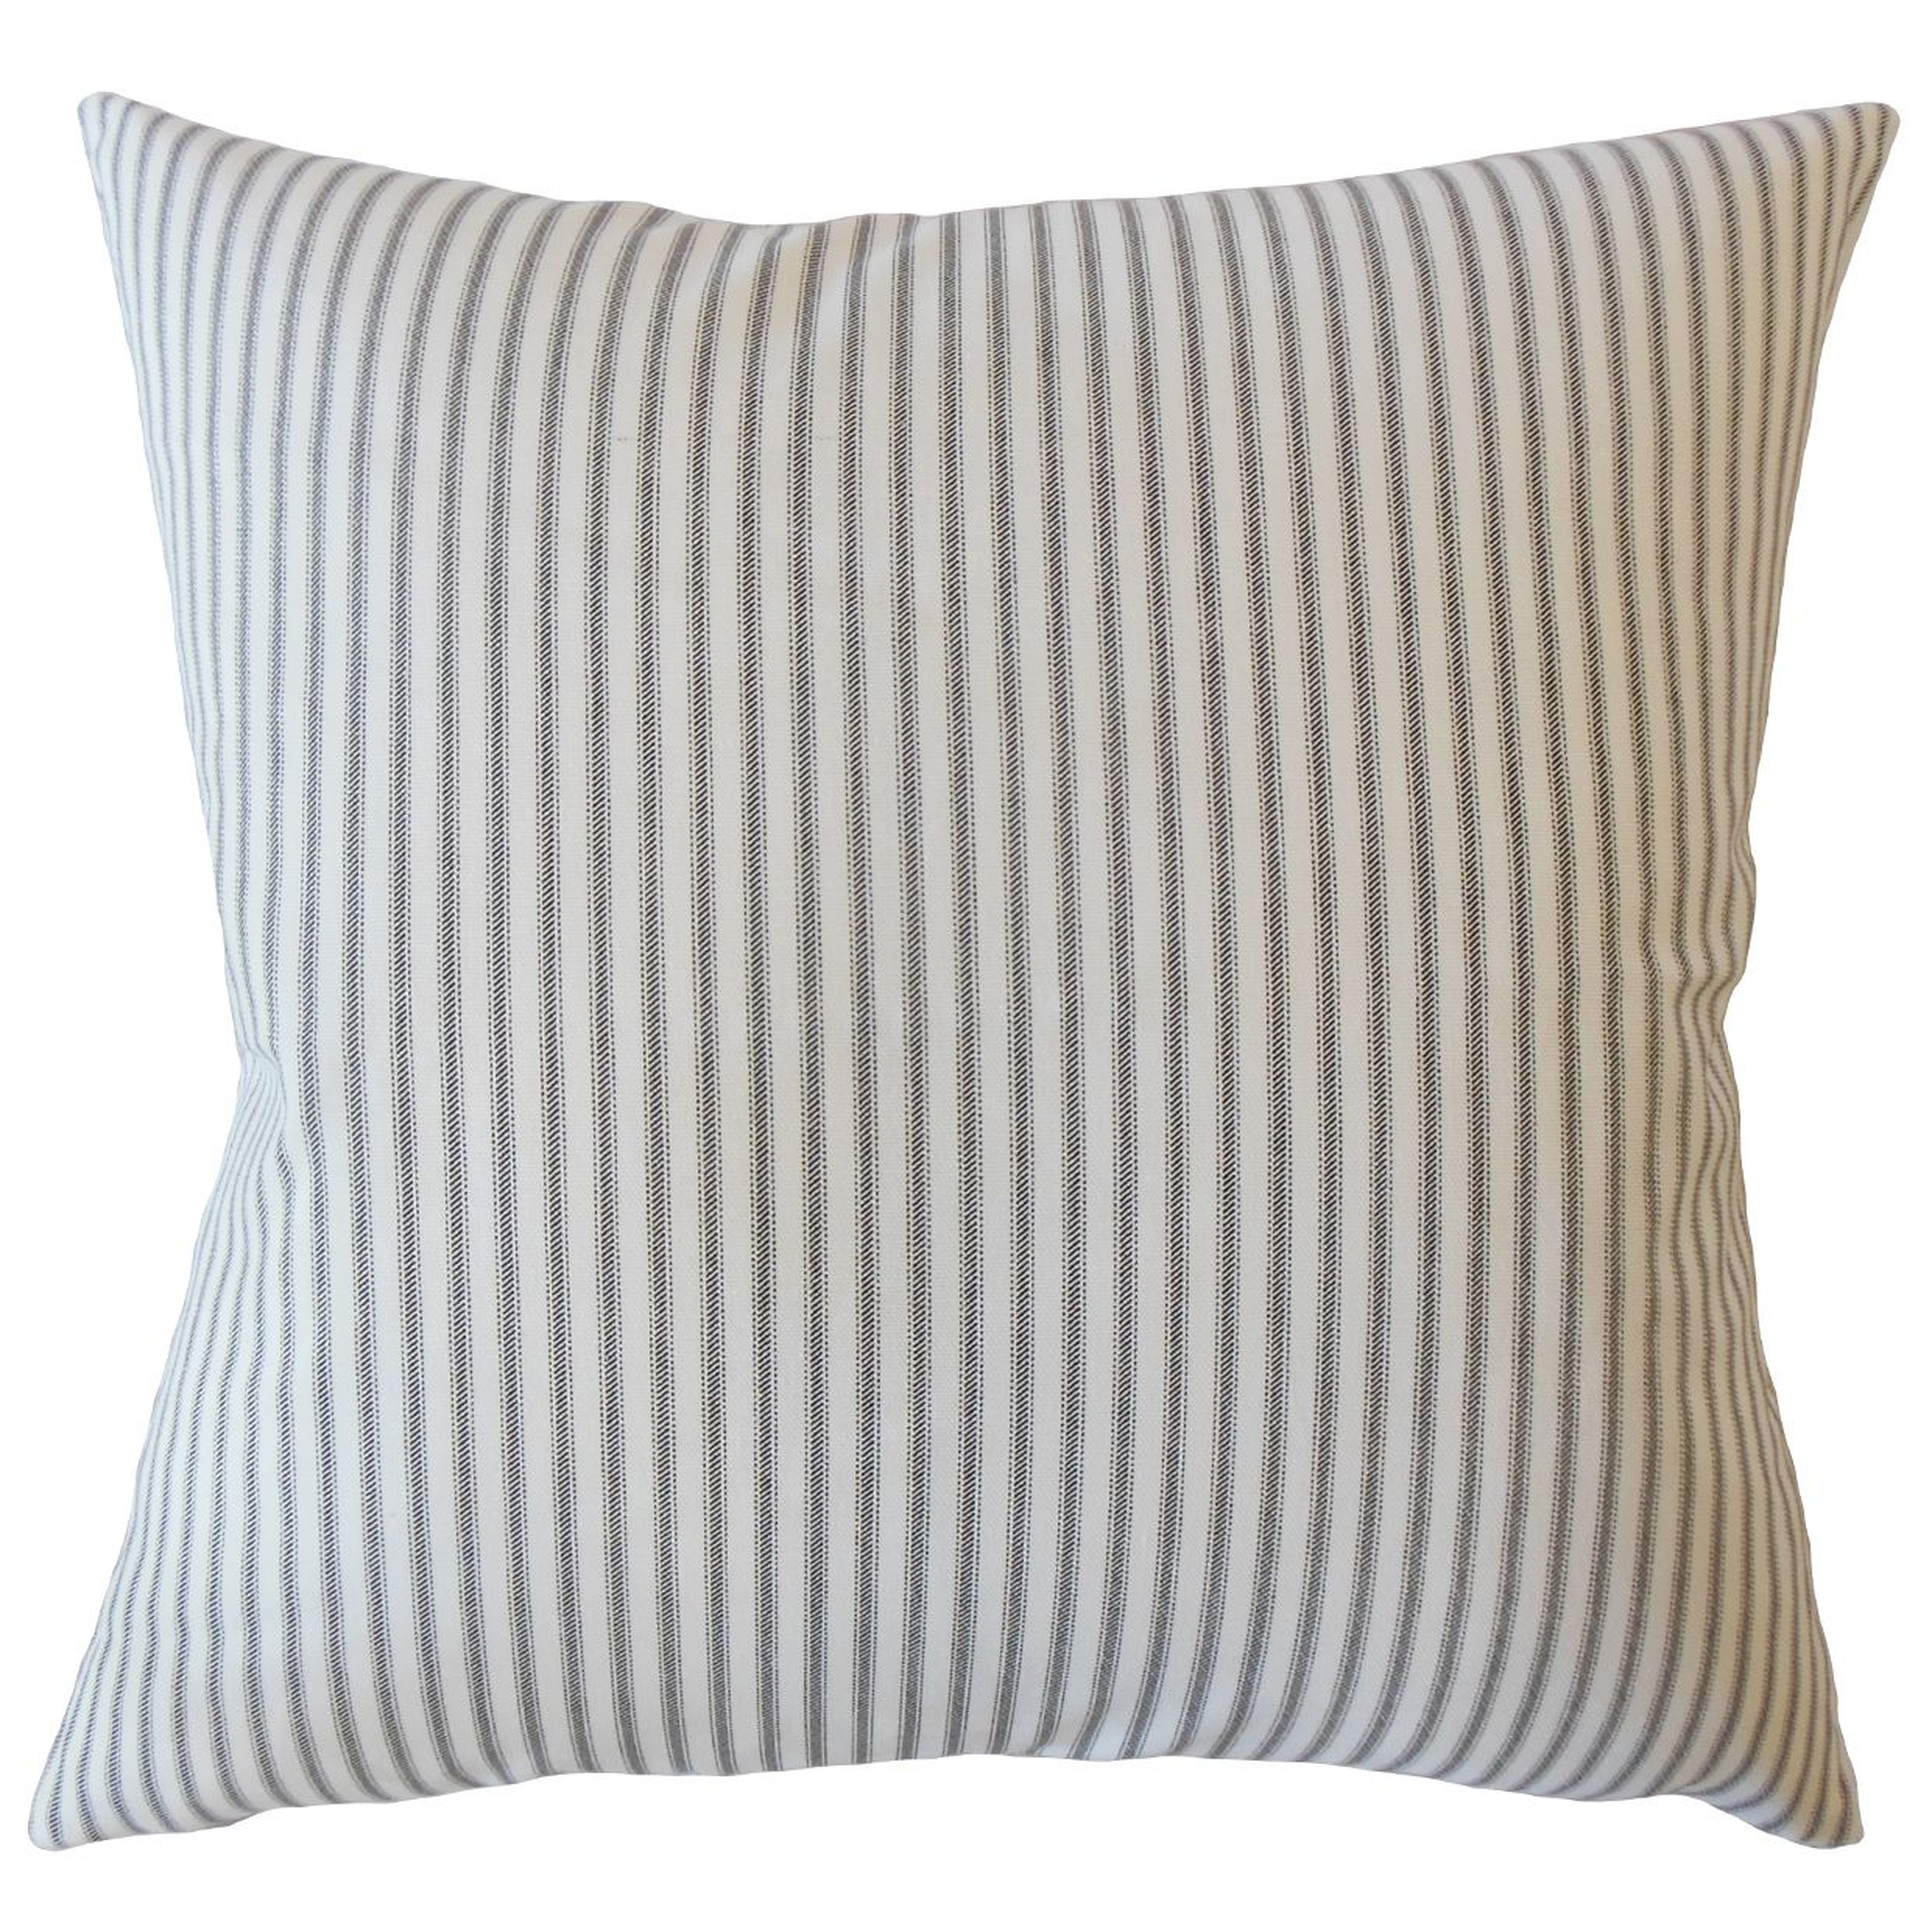 Ticking Stripe Pillow, Navy, 22" x 22" - Havenly Essentials